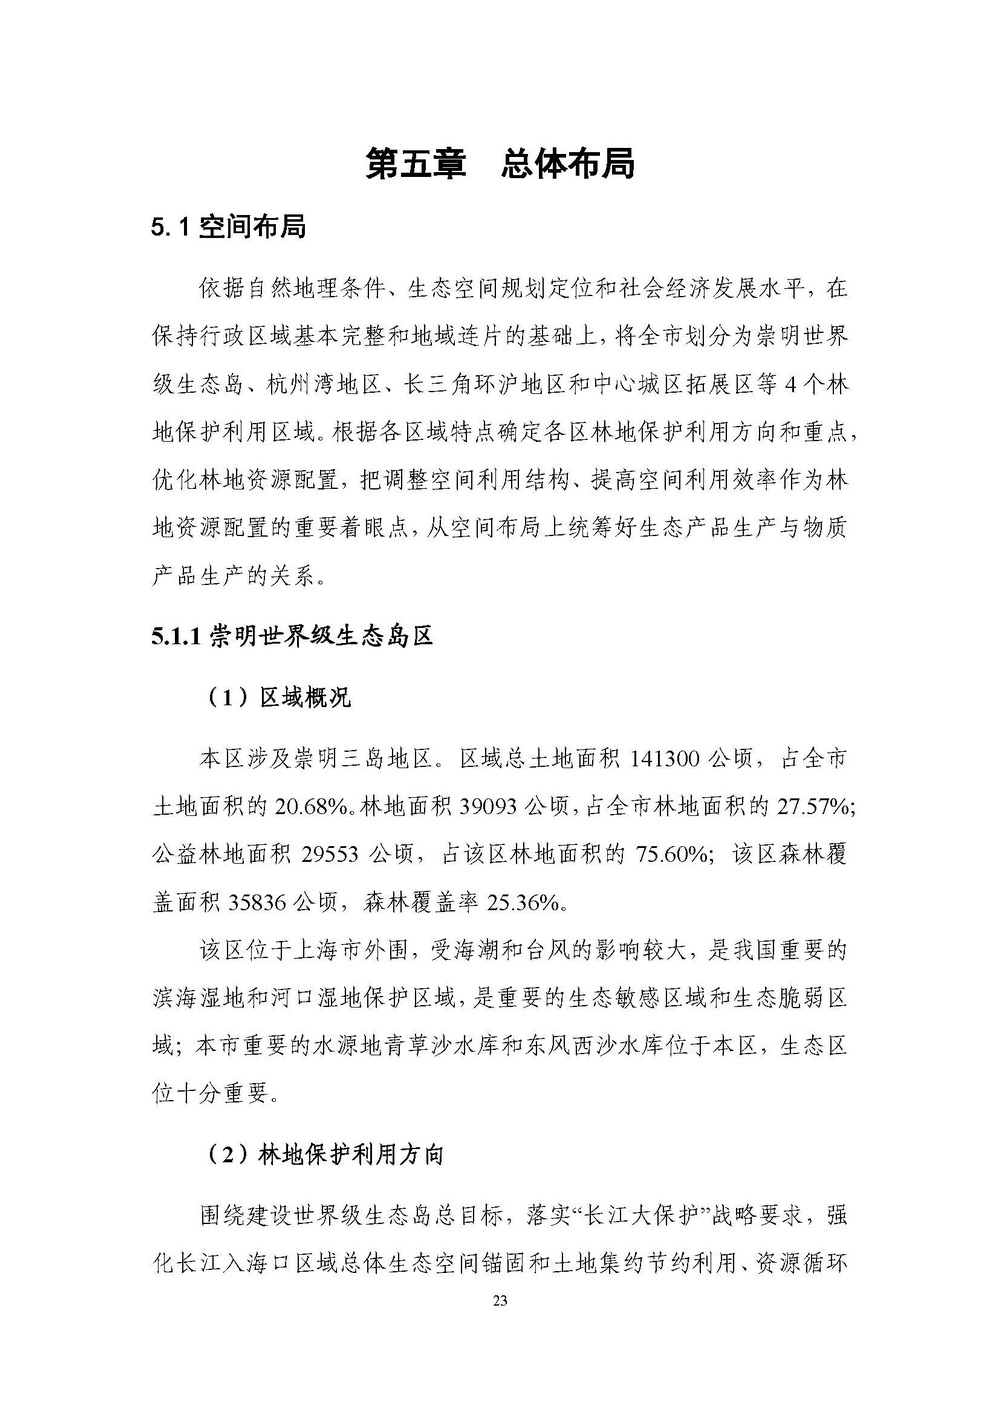 上海市森林和林地保护利用规划文本 公开稿 附图_页面_26.jpg